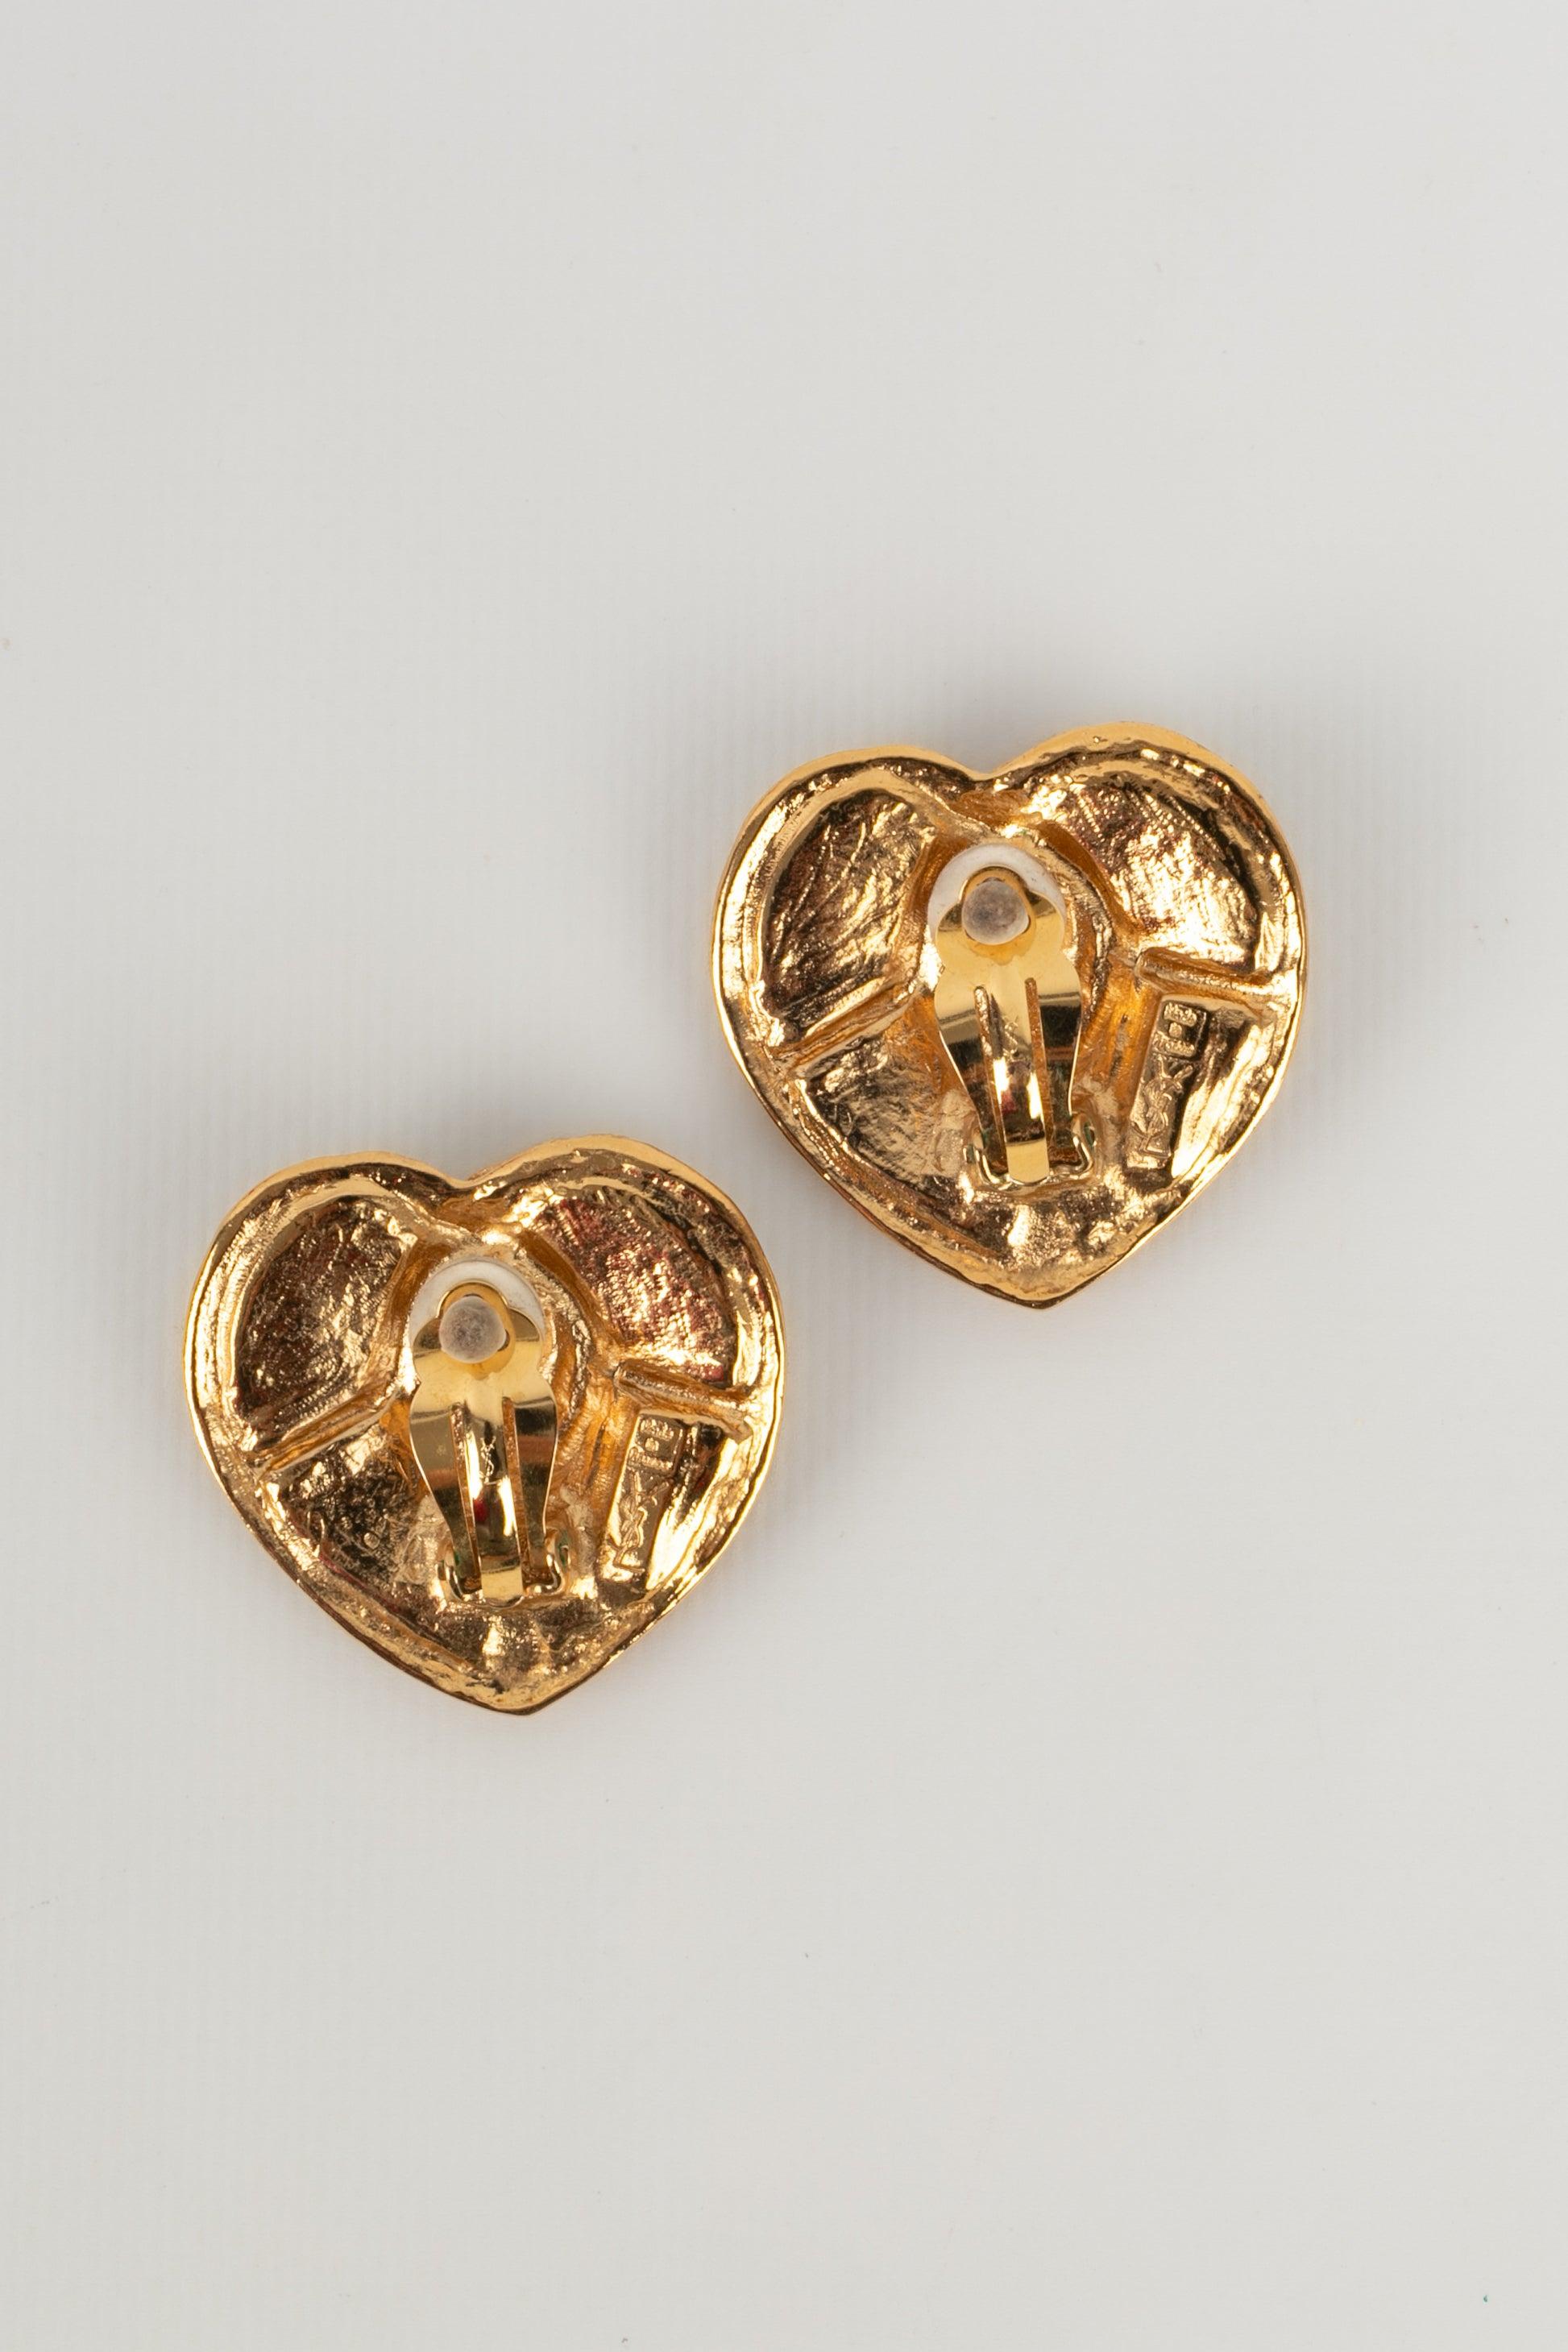 Women's Yves Saint Laurent Golden Metal Clip-On Earrings Representing Heart, 1980s For Sale